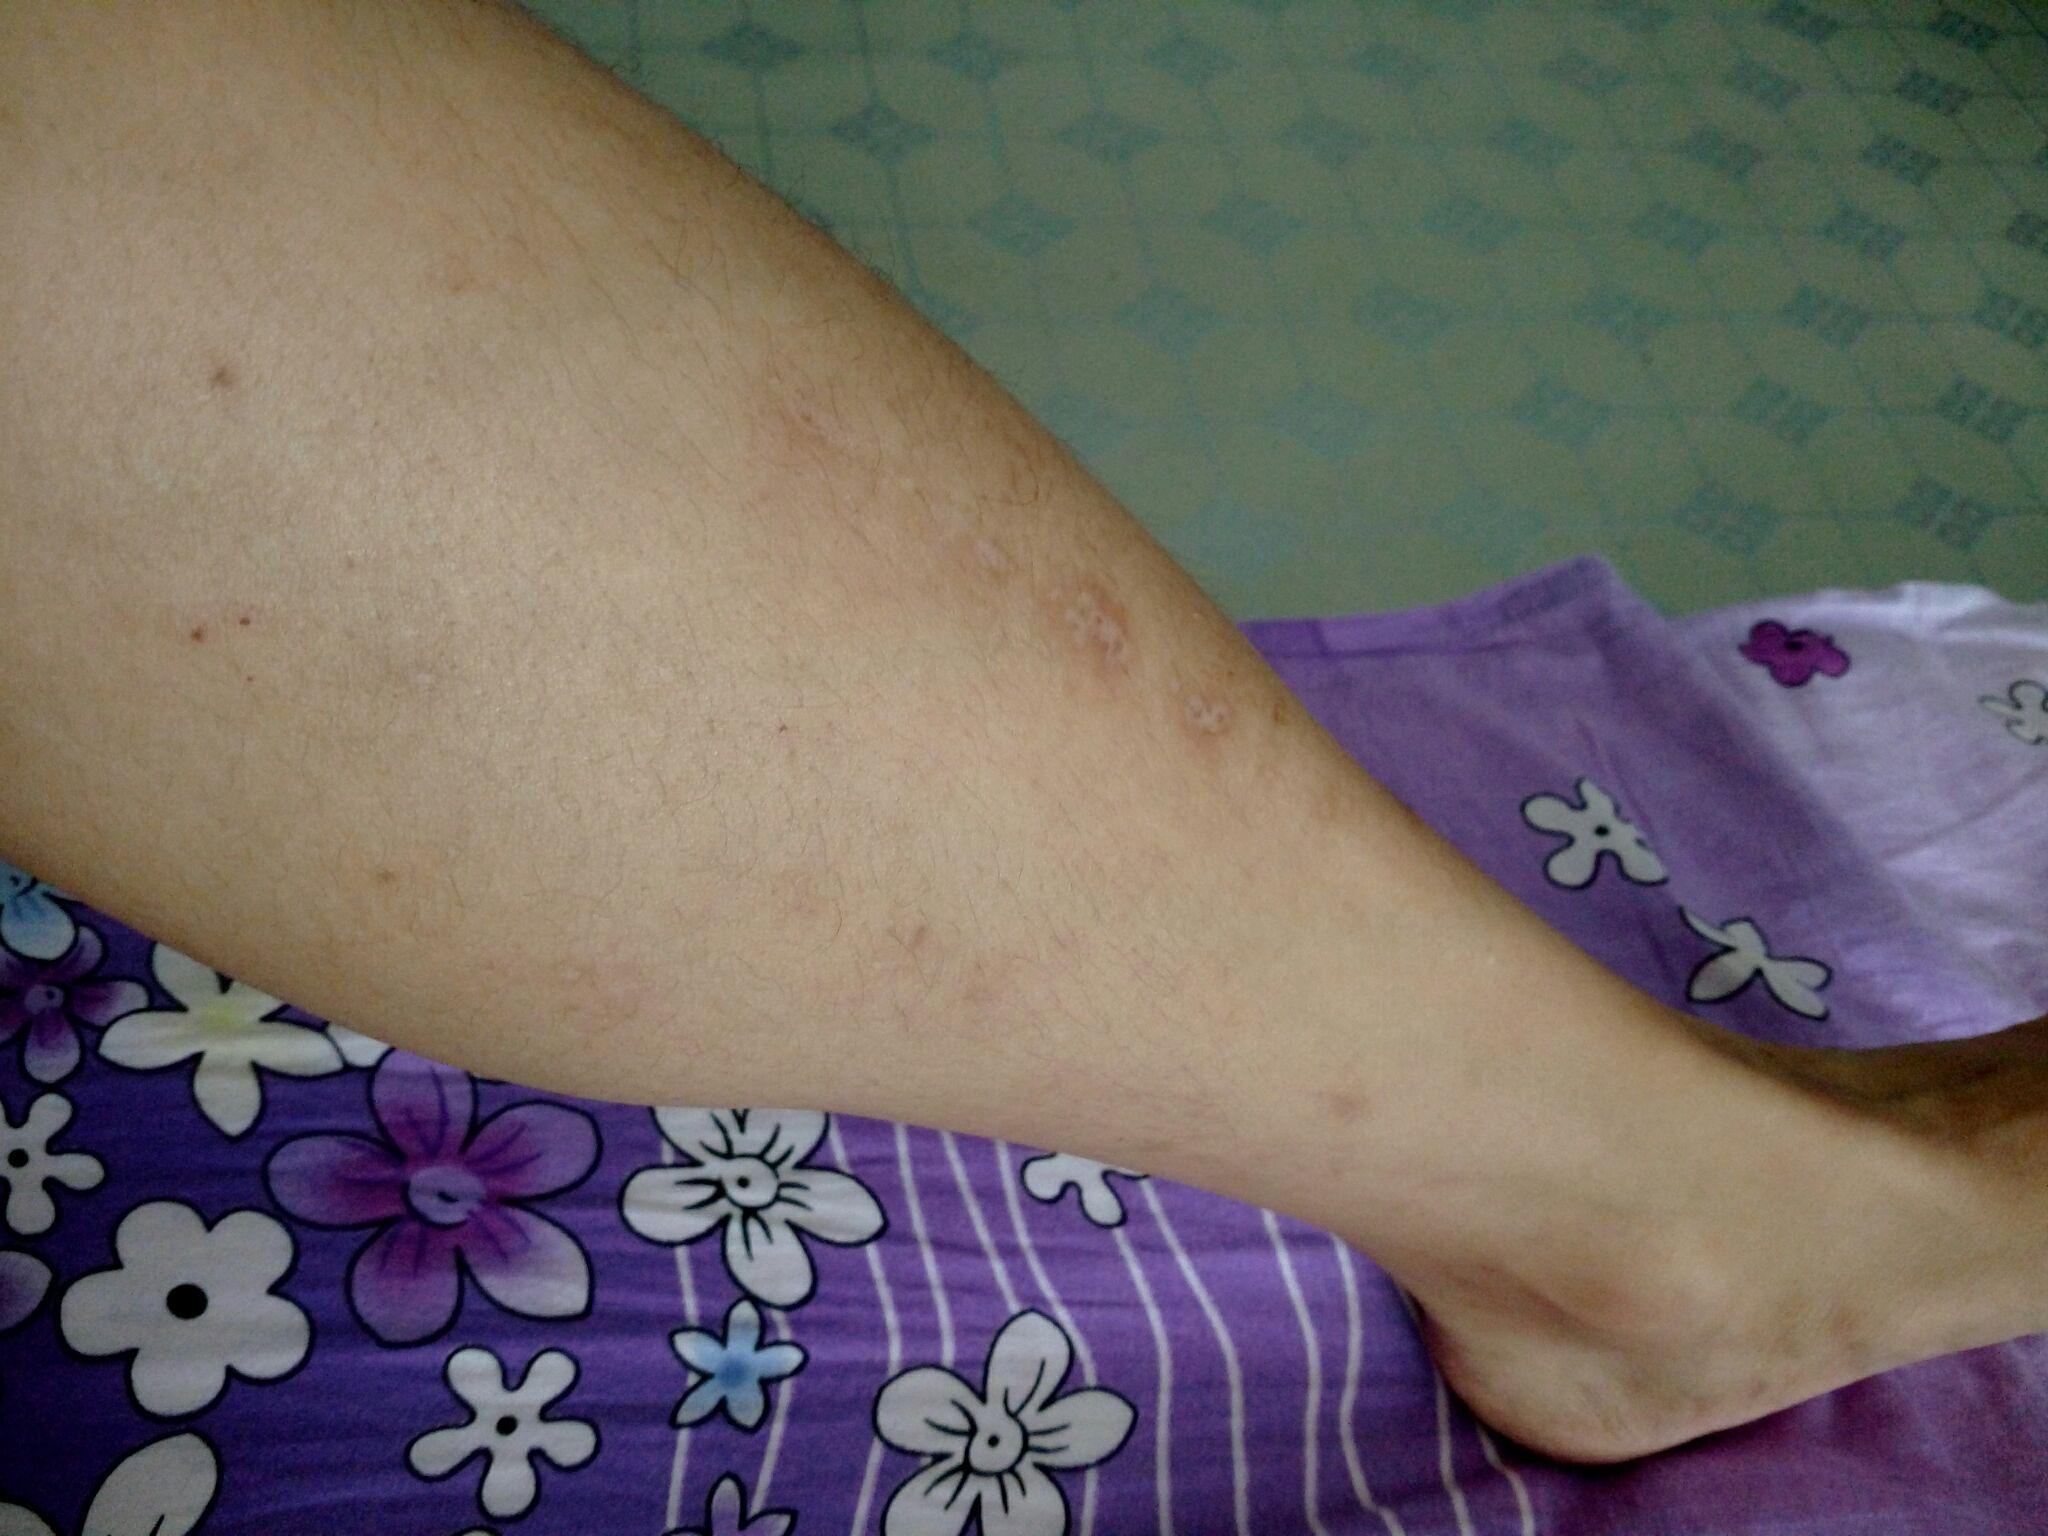 平常特别容易过敏…医生说是荨麻疹…腿上也因